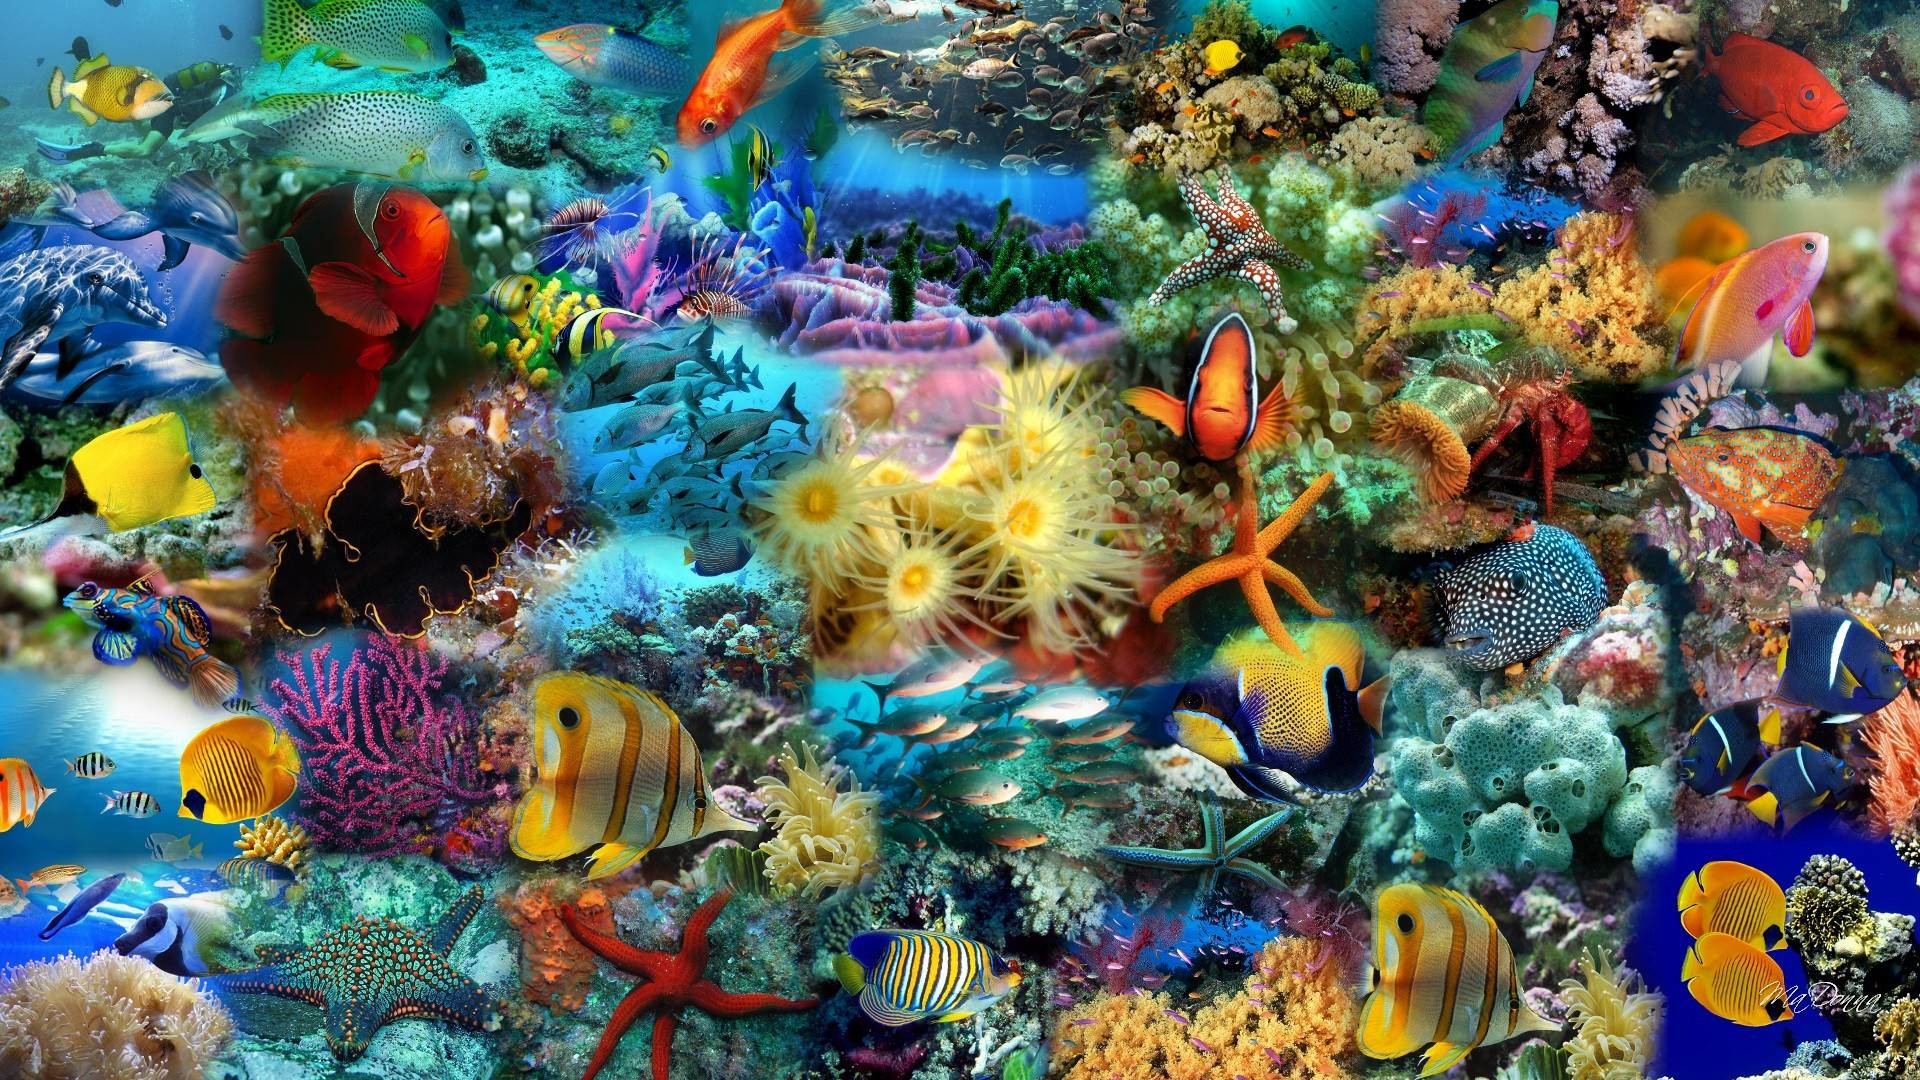 wasserfisch wallpaper kostenloser download,korallenriff,riff,meeresbiologie,korallenrifffische,steinkoralle